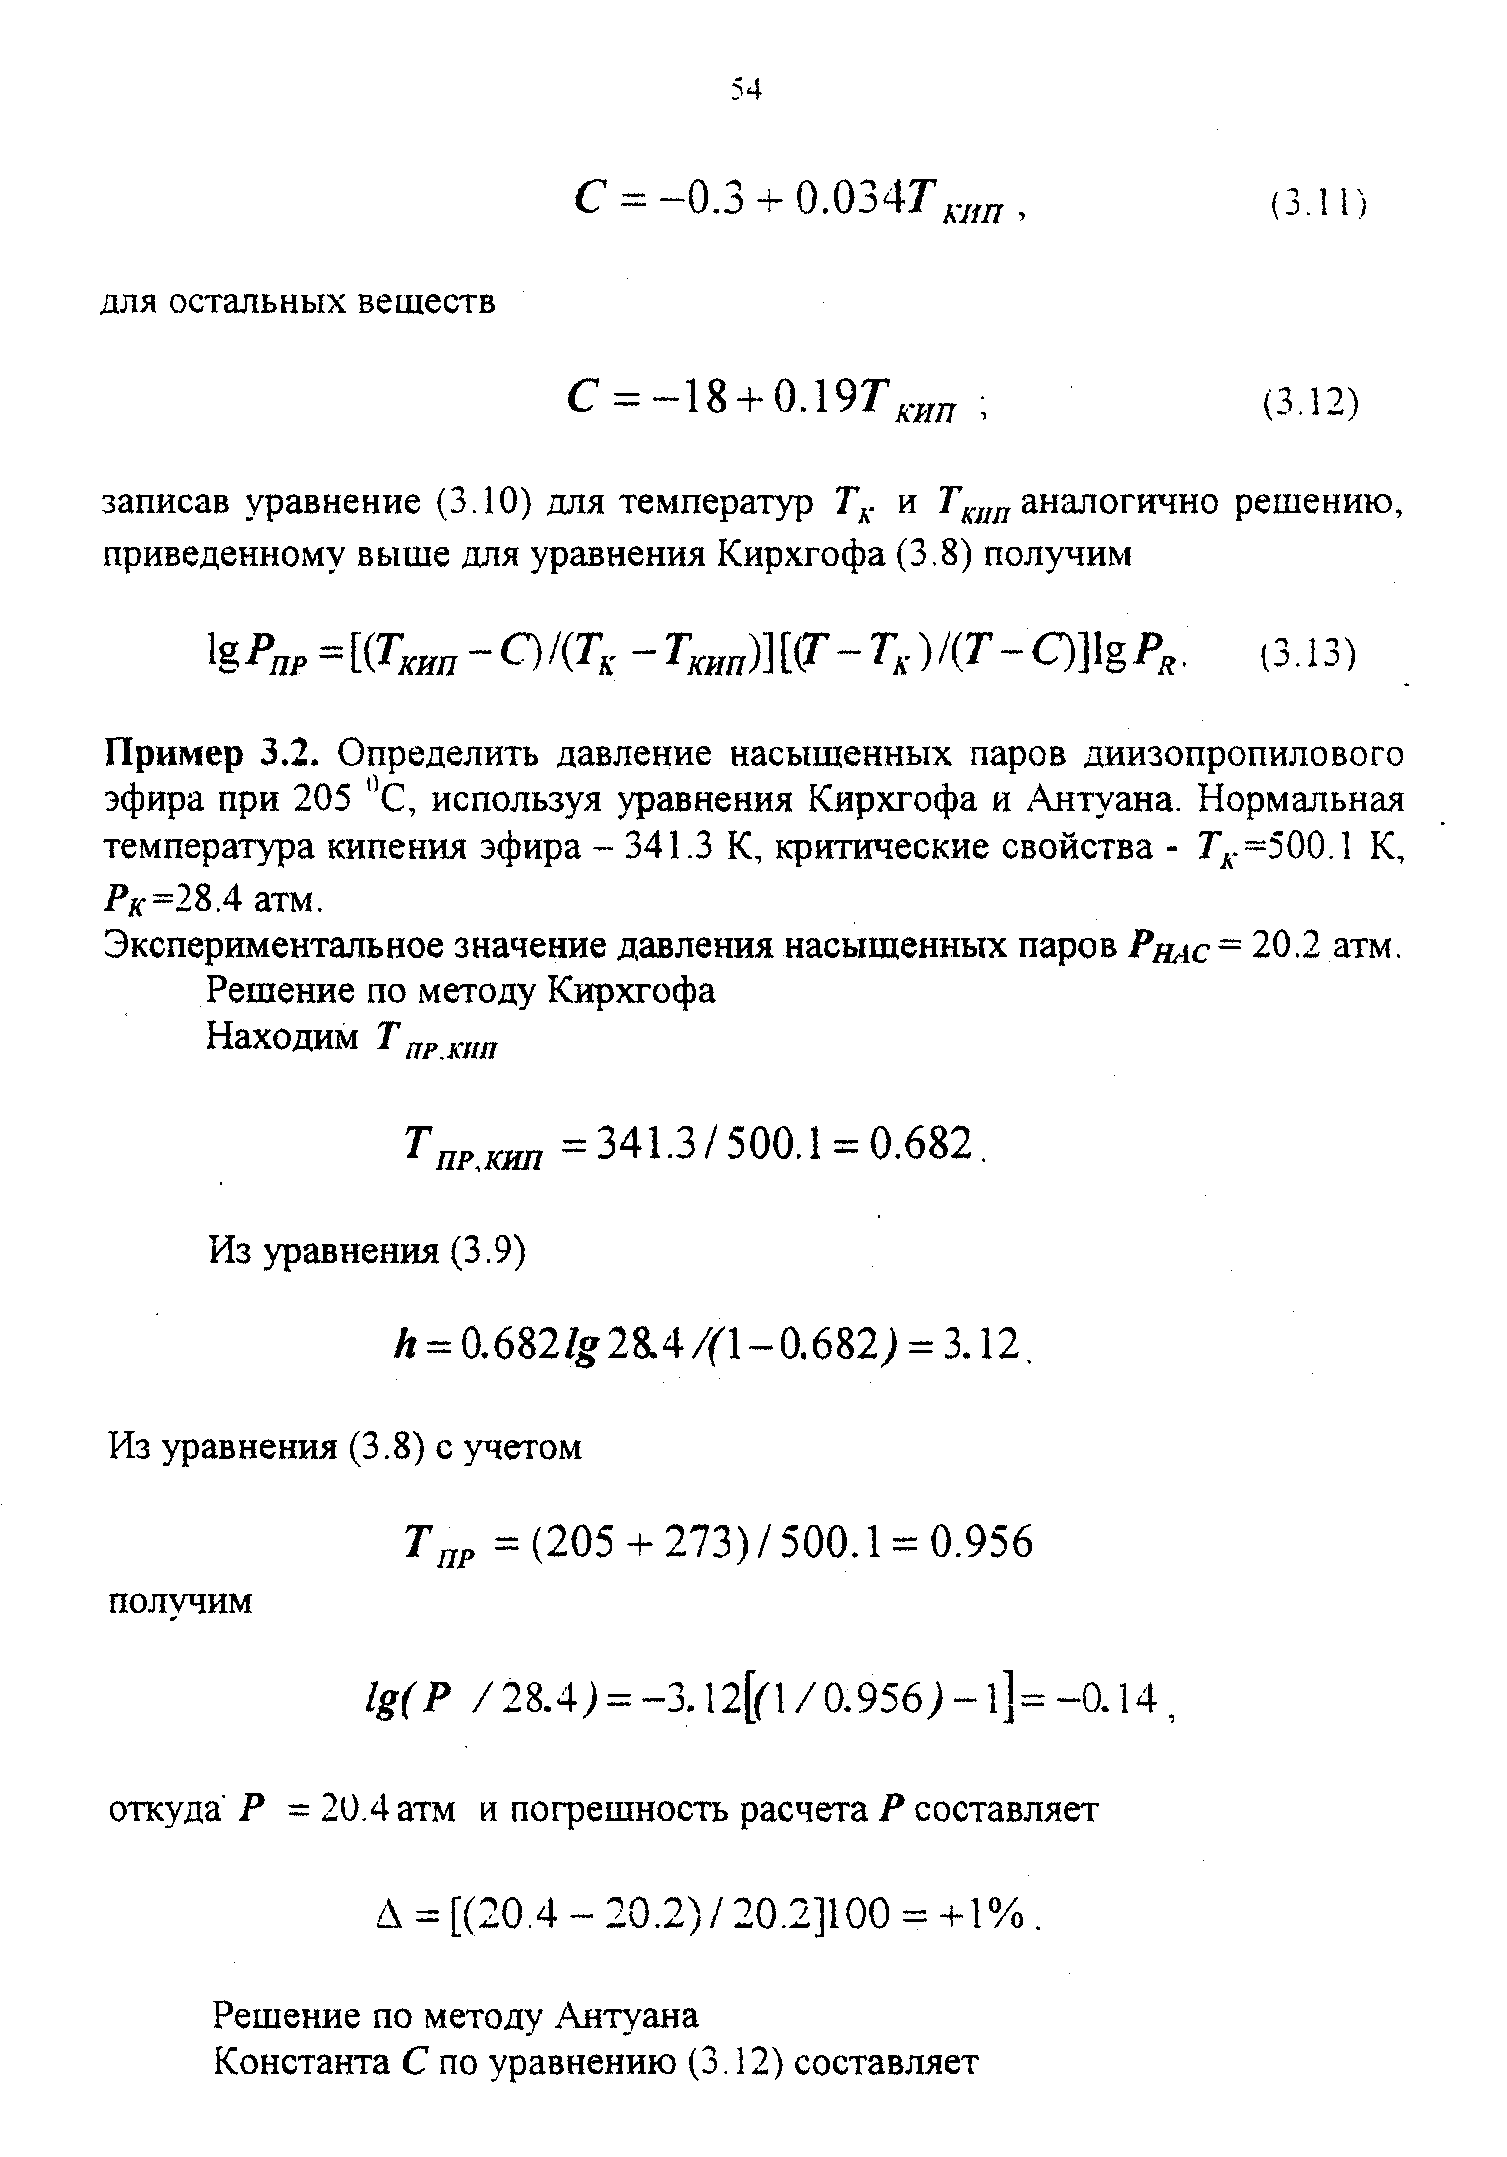 Пример 3.2. Определить давление насыщенных паров диизопропилового эфира при 205 С, используя уравнения Кирхгофа и Антуана. Нормальная температура кипения эфира - 341.3 К, критические свойства - Гд. =500.1 К, Рк=2ЪЛ атм.